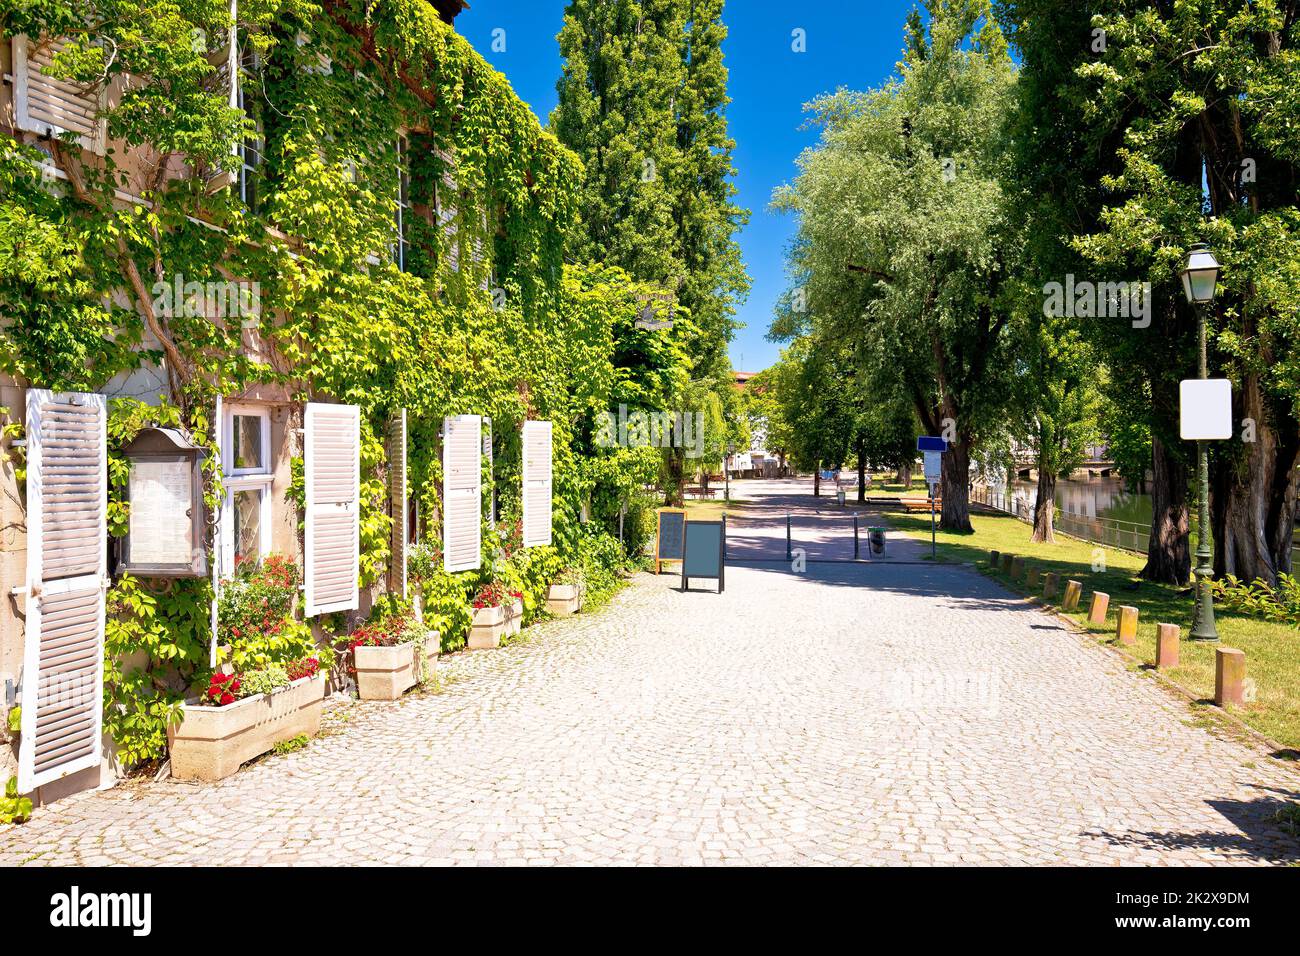 Città di Strasburgo passerella lastricata in piccoli quartieri storici francesi Foto Stock